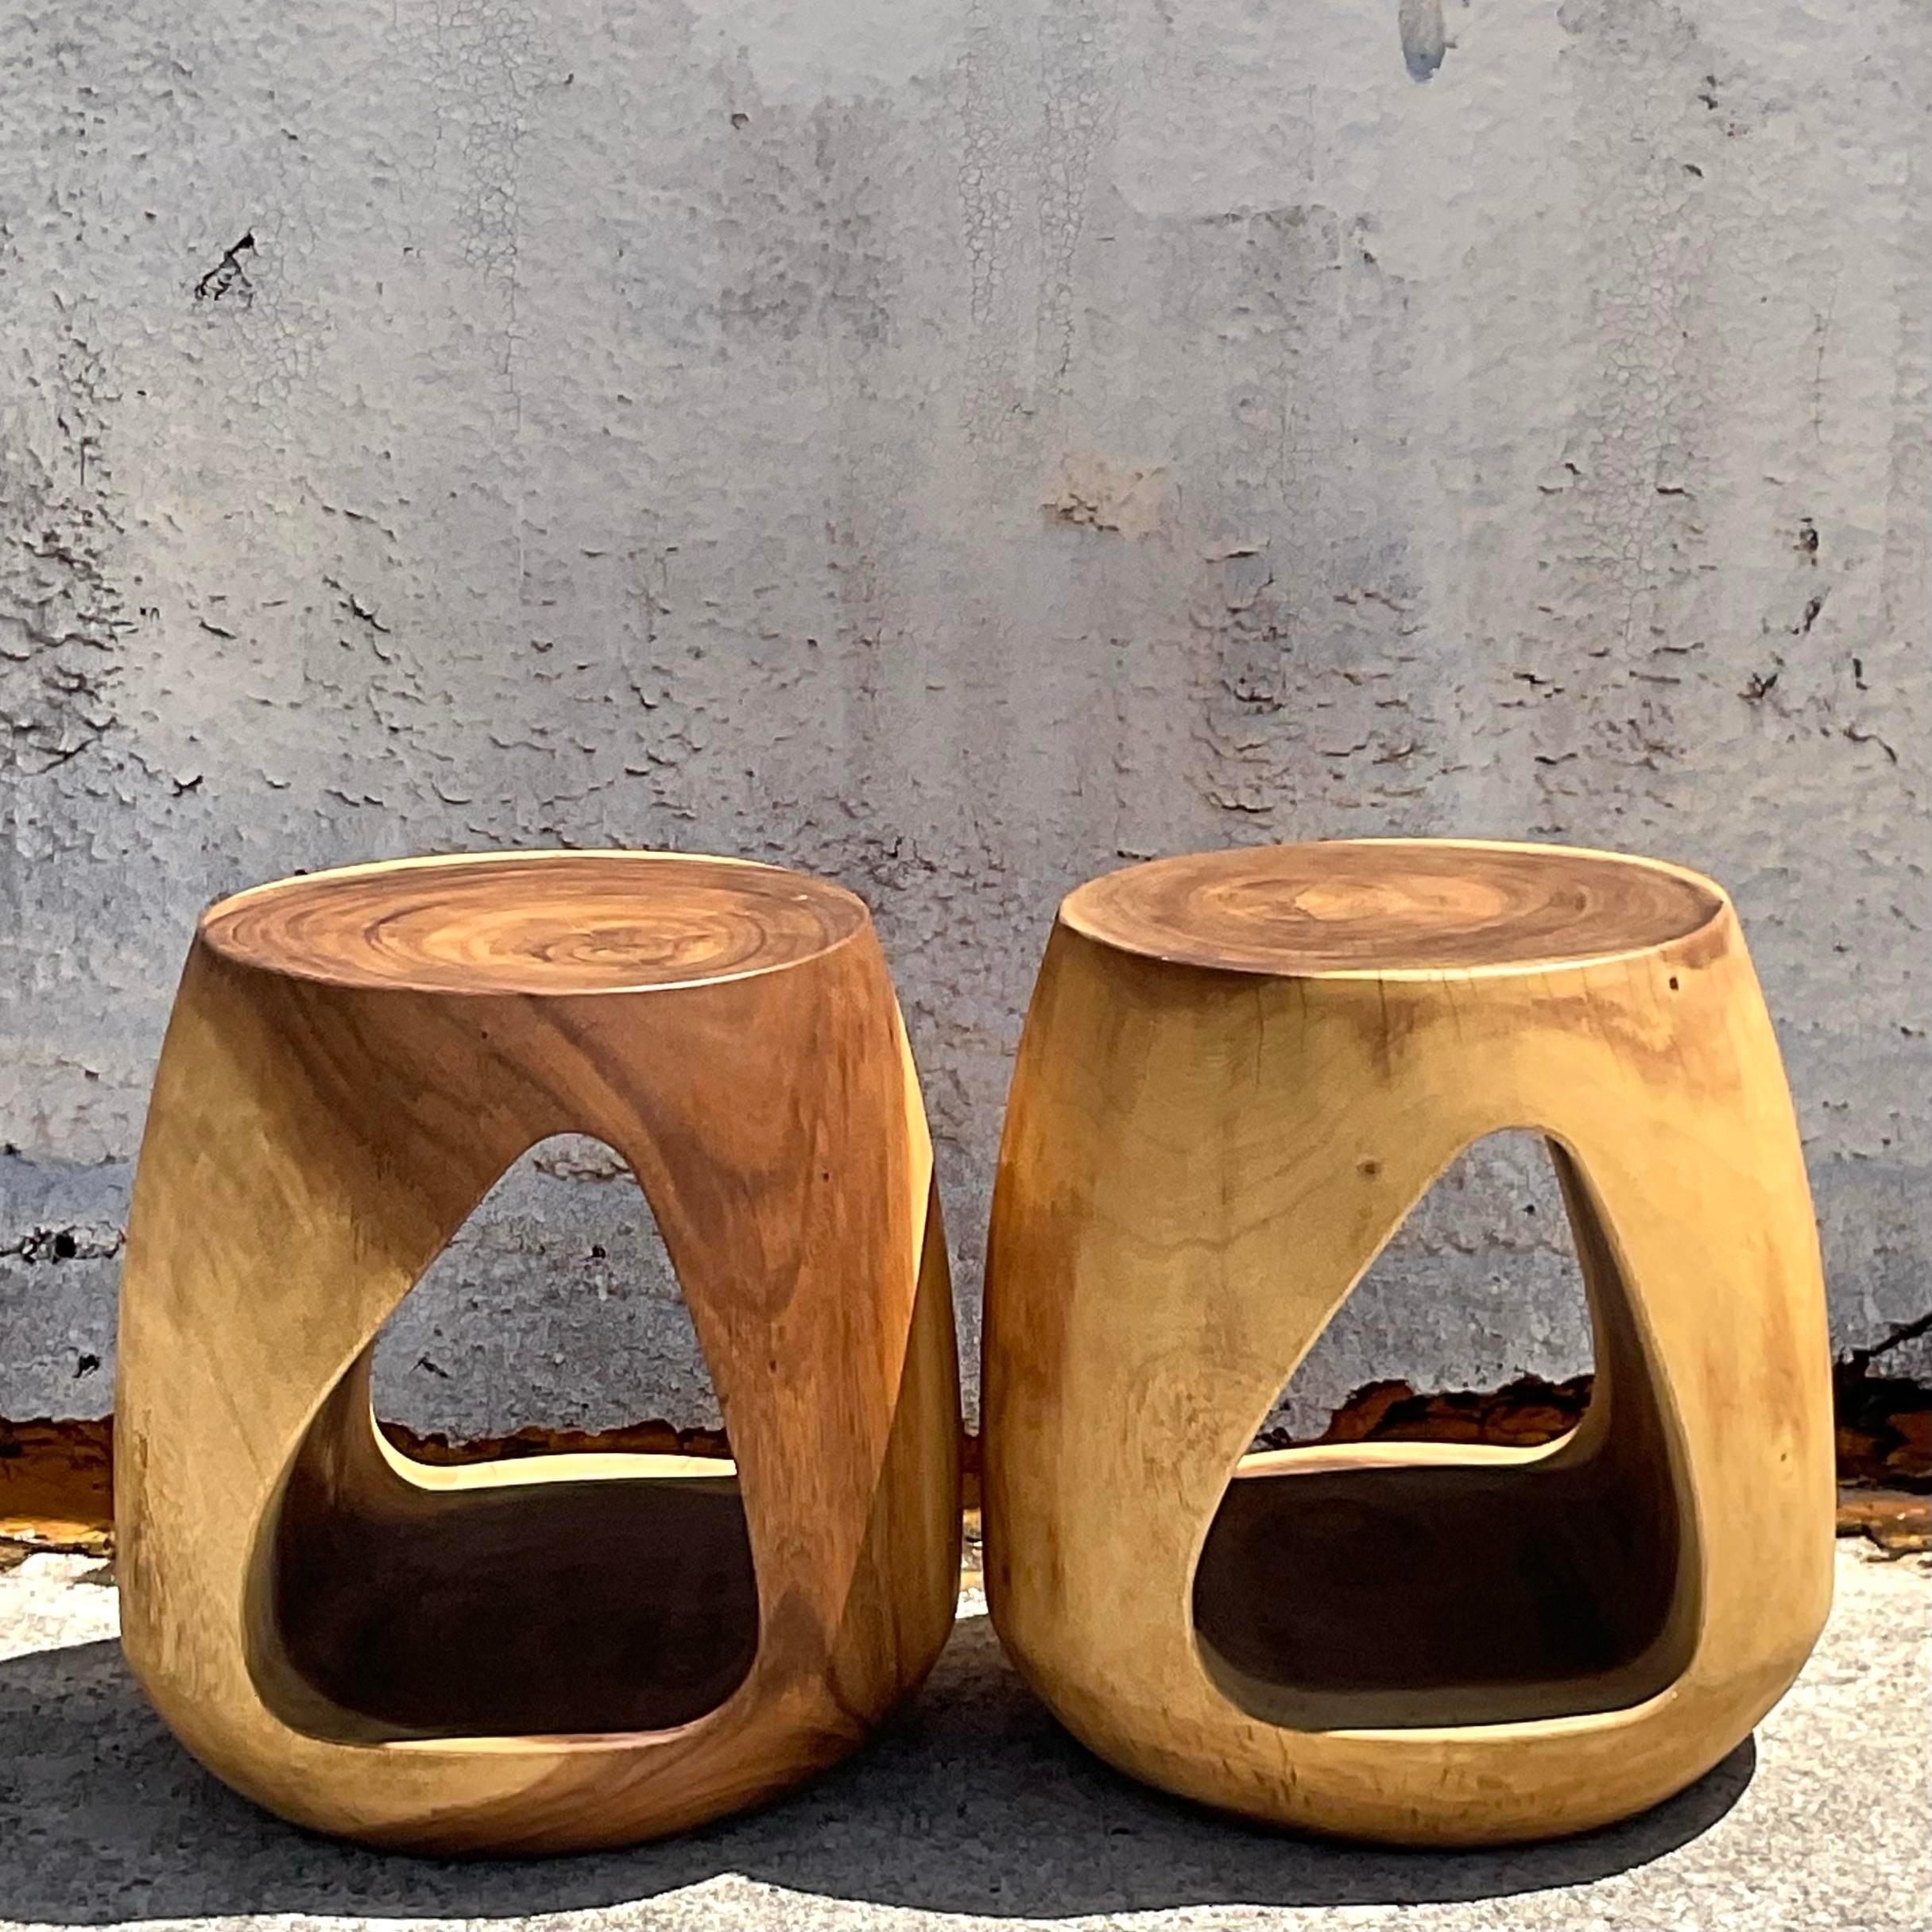 Peppen Sie Ihren Wohnbereich mit diesem Paar geschnitzter Boho Stump Low Stools auf, die die Essenz amerikanischer Handwerkskunst und Stil verkörpern. Jeder Hocker ist mit aufwändigen Schnitzereien versehen, die einen rustikalen Charme und